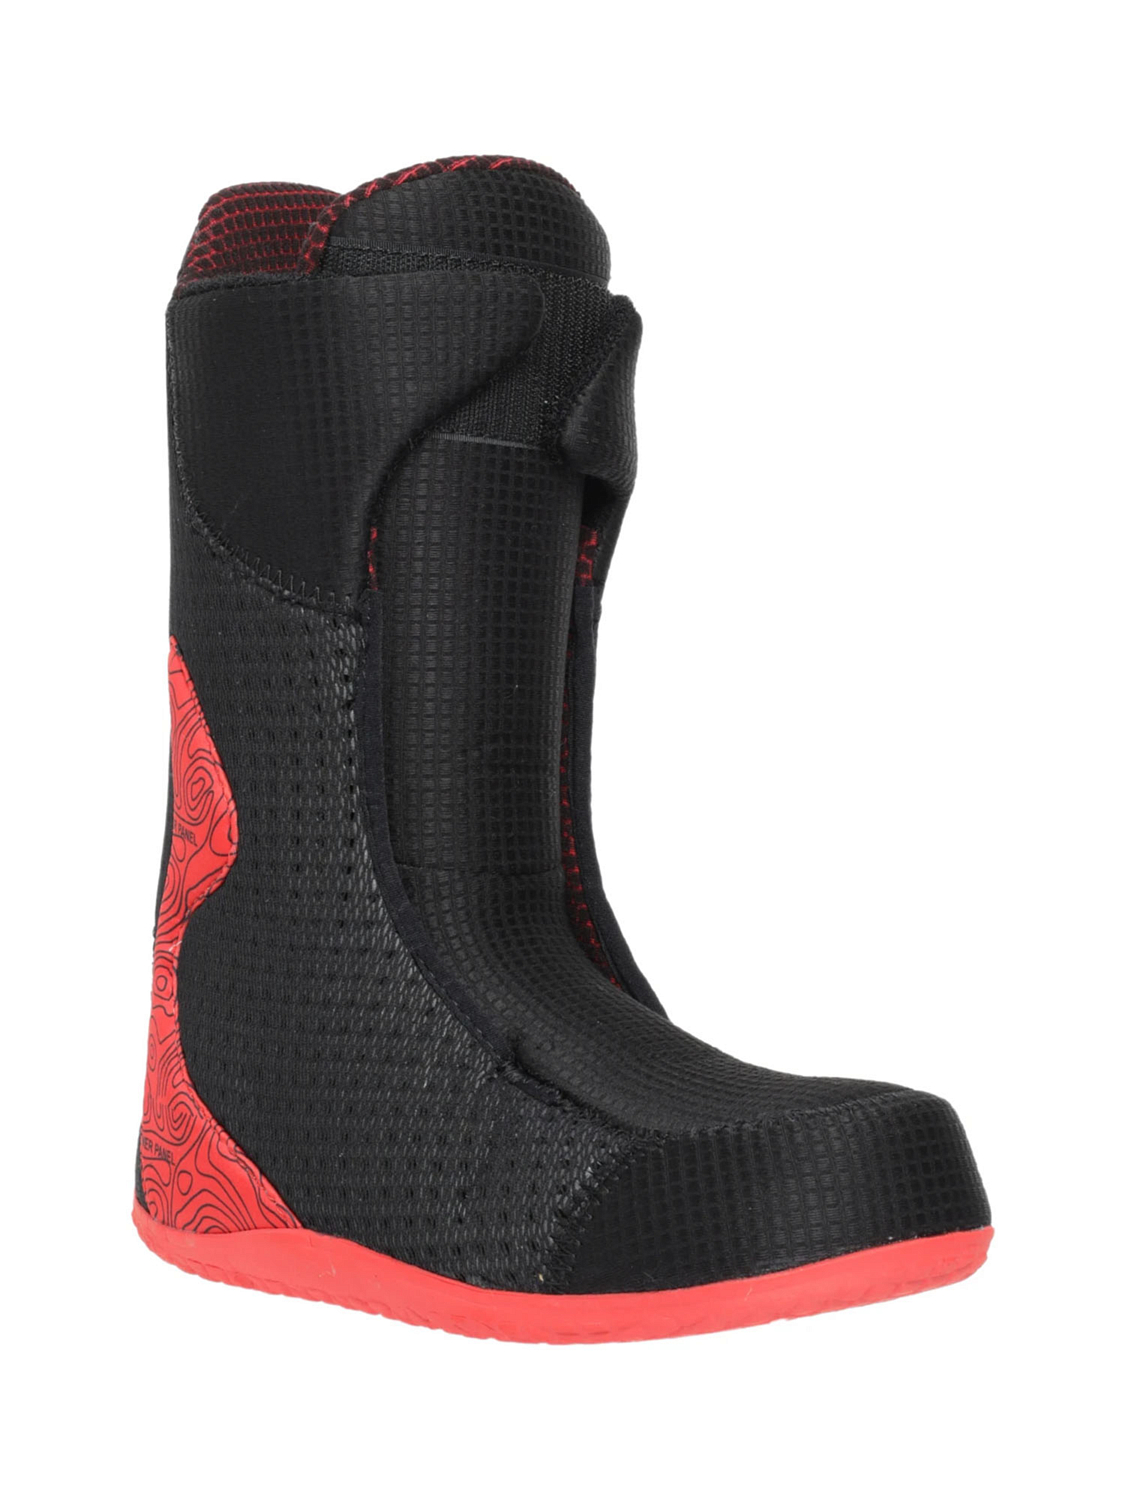 Ботинки для сноуборда BURTON 2020-21 SLX Black/Red